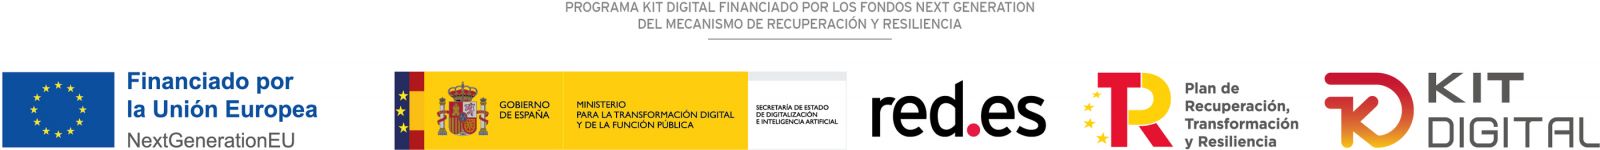 Logos de las diferentes instituciones que llevan a cabo el kit digital